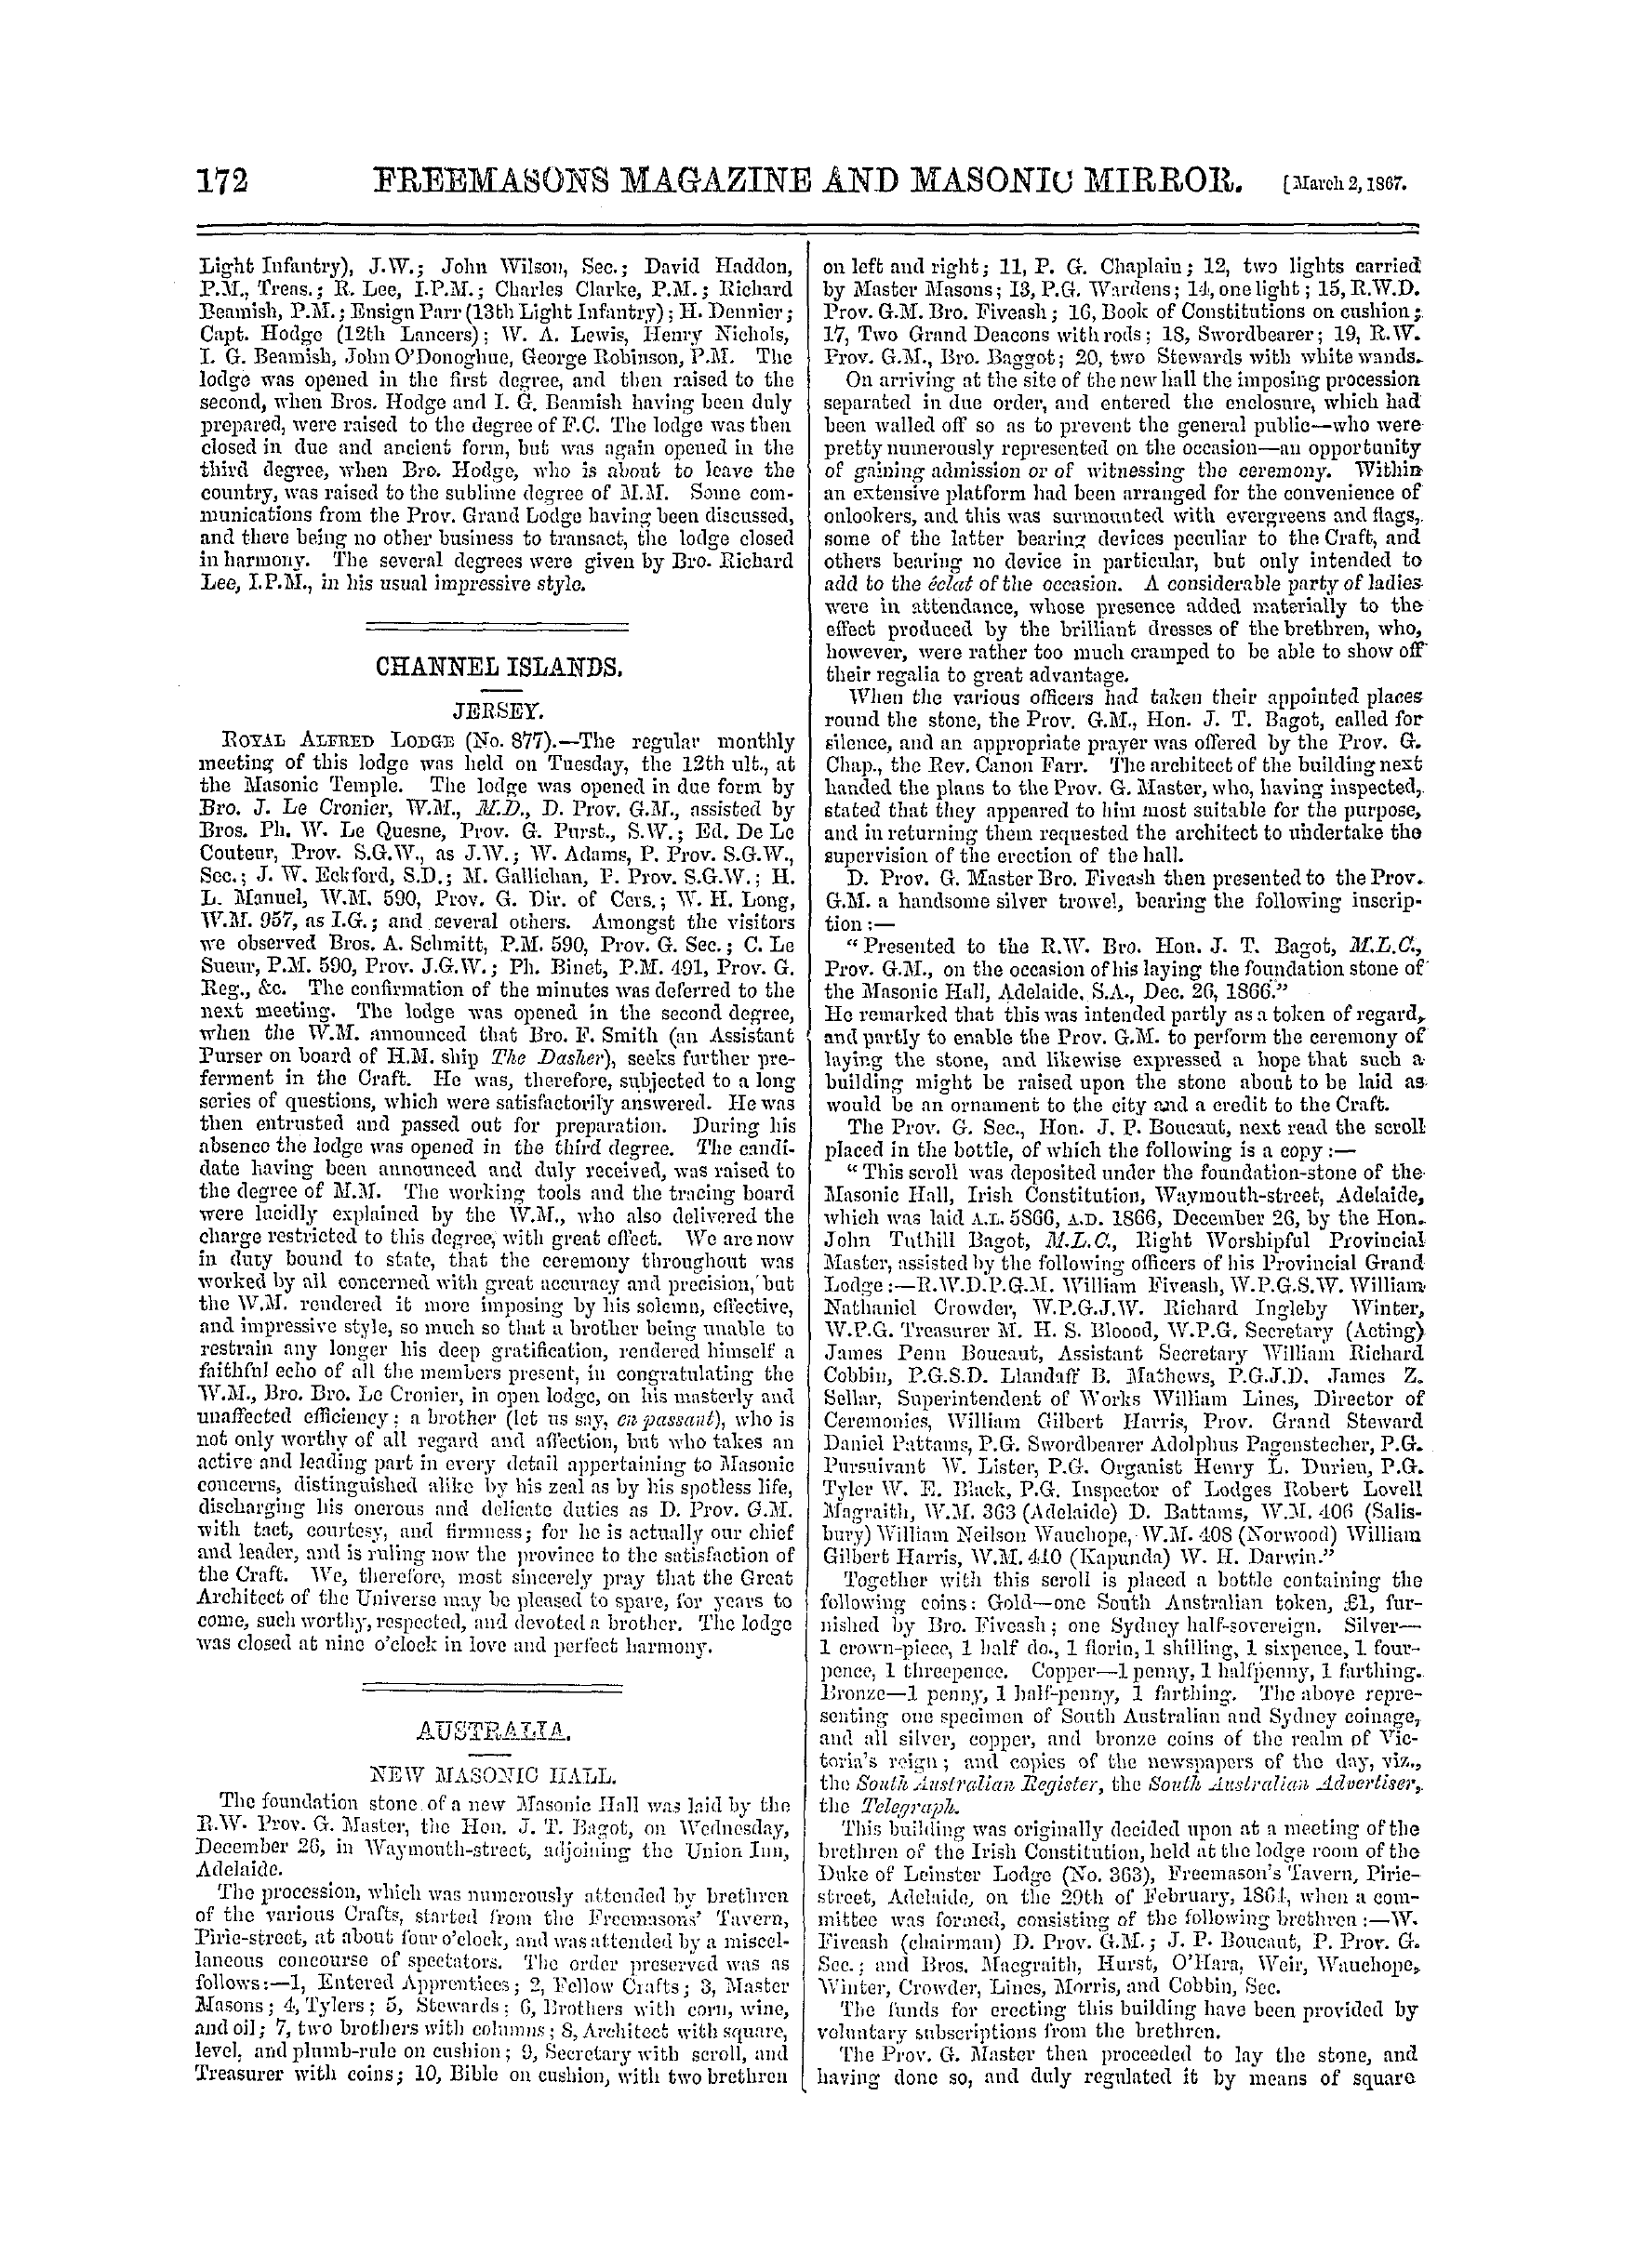 The Freemasons' Monthly Magazine: 1867-03-02: 12